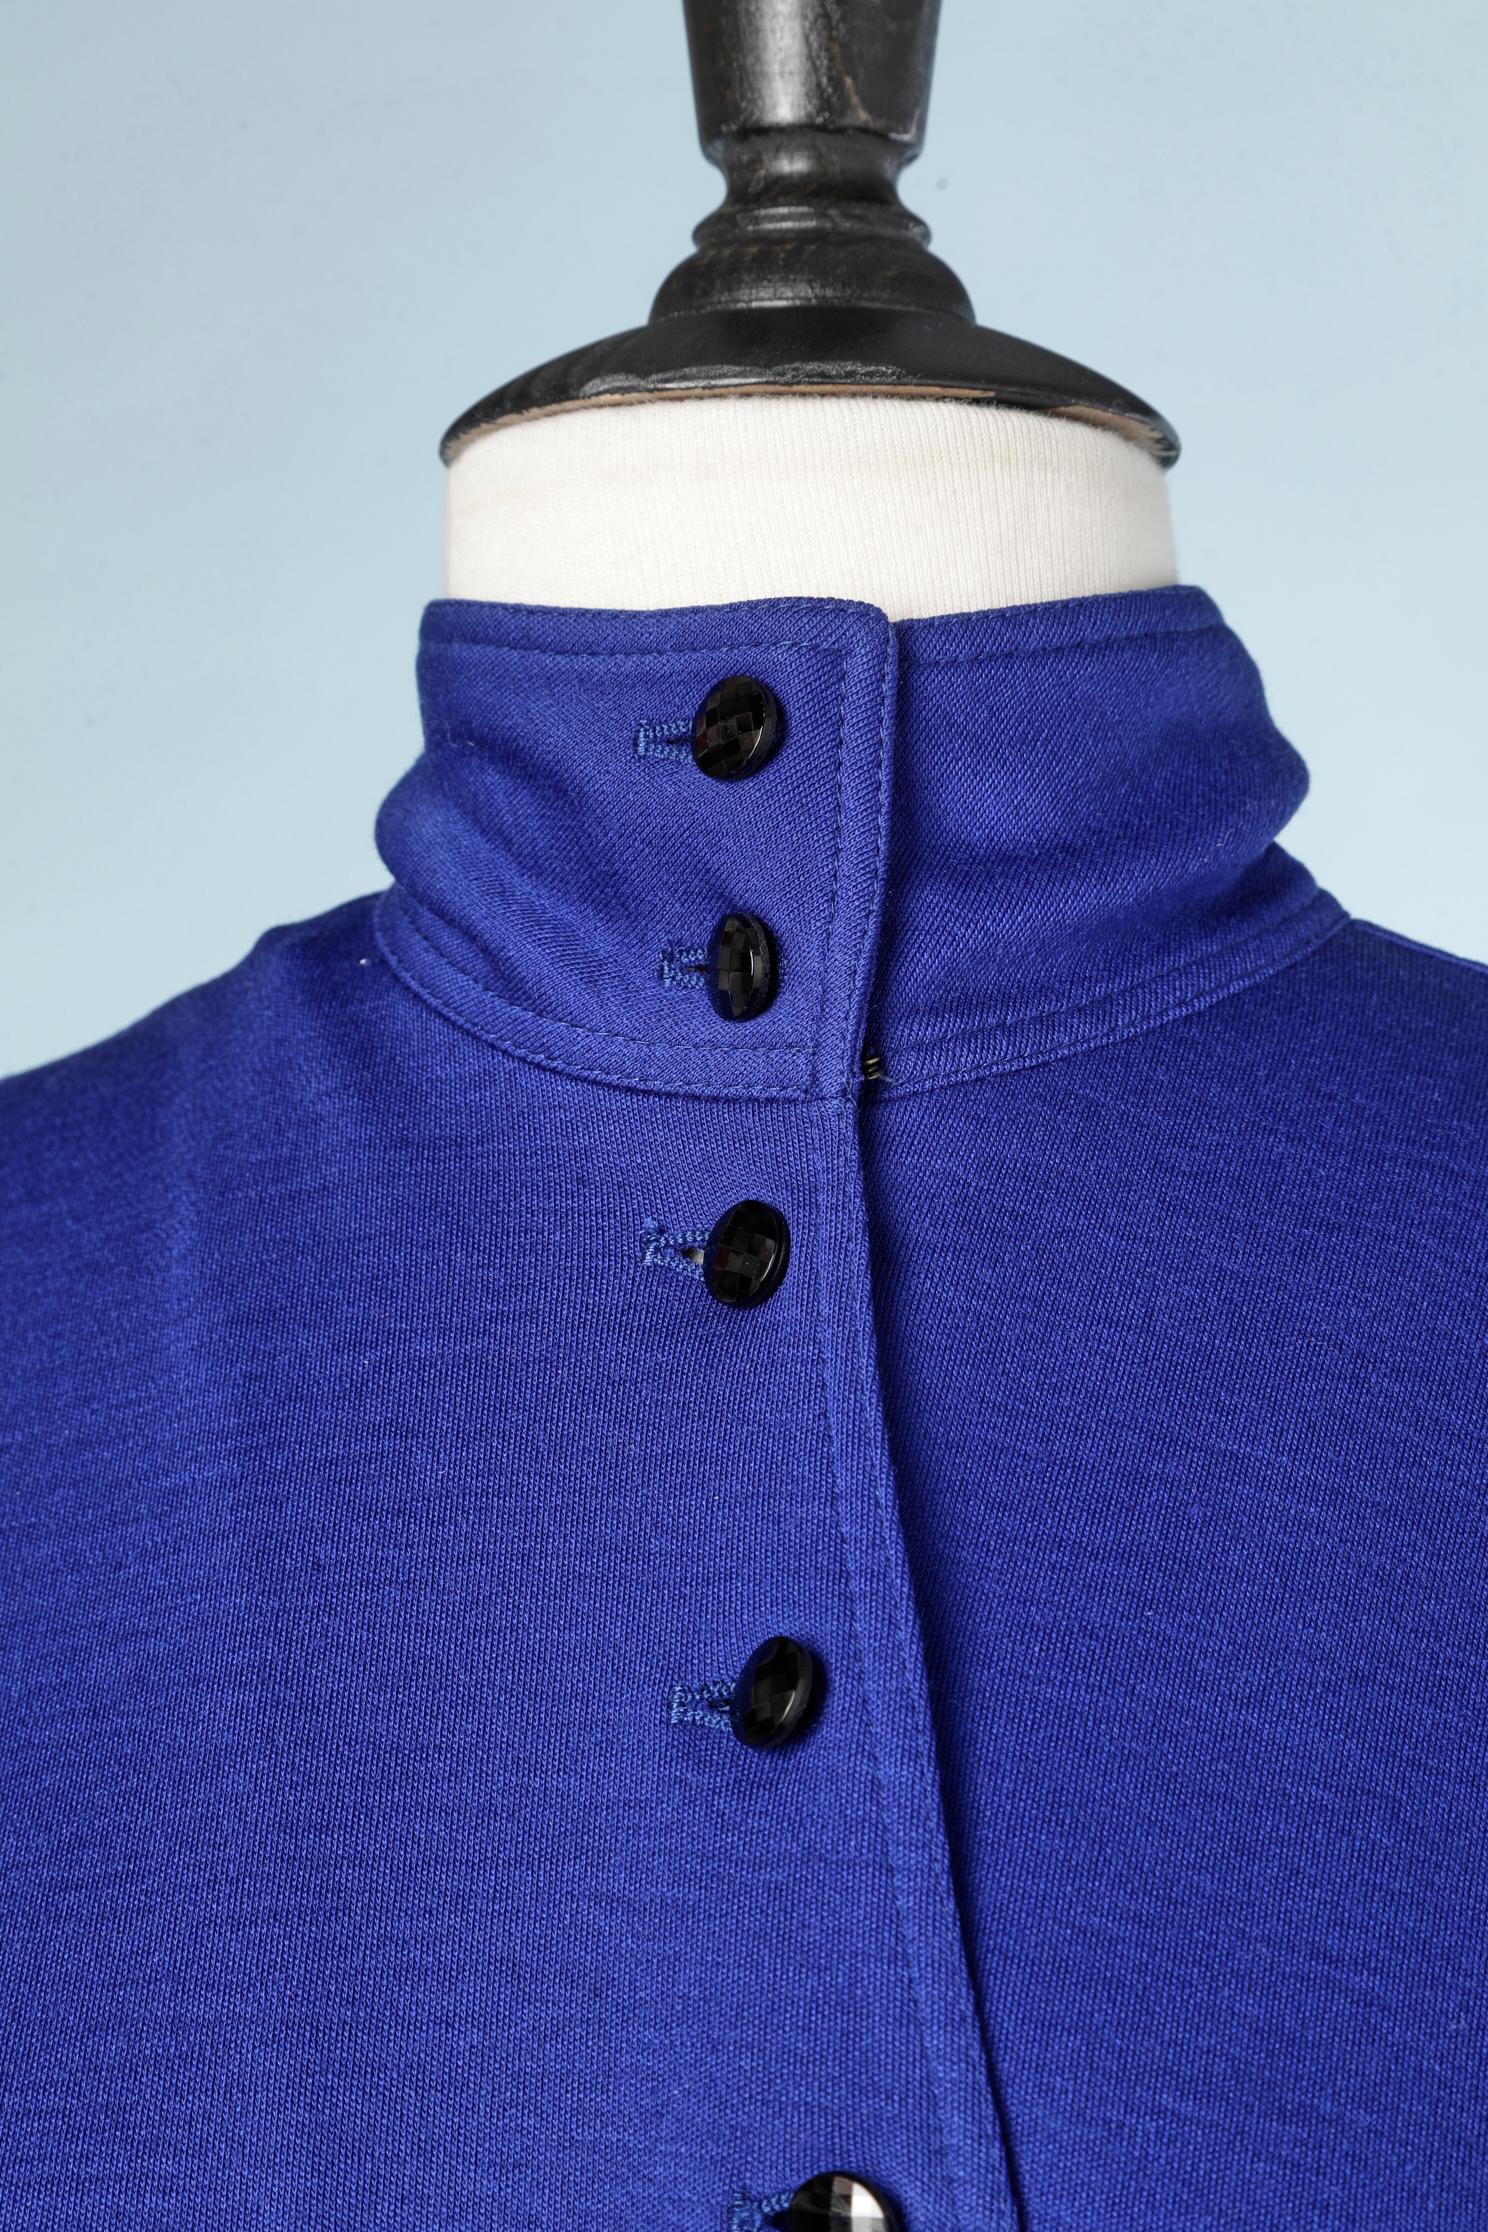 robe des années 1980 en jersey de laine bleu et noir, avec boutons noirs et insertion d'une ceinture drapée. Fermeture éclair sur le côté gauche. Fermeture éclair au niveau du poignet 
Emanuel Ungaro a fait pour Hirshleifer's 
Taille 8 